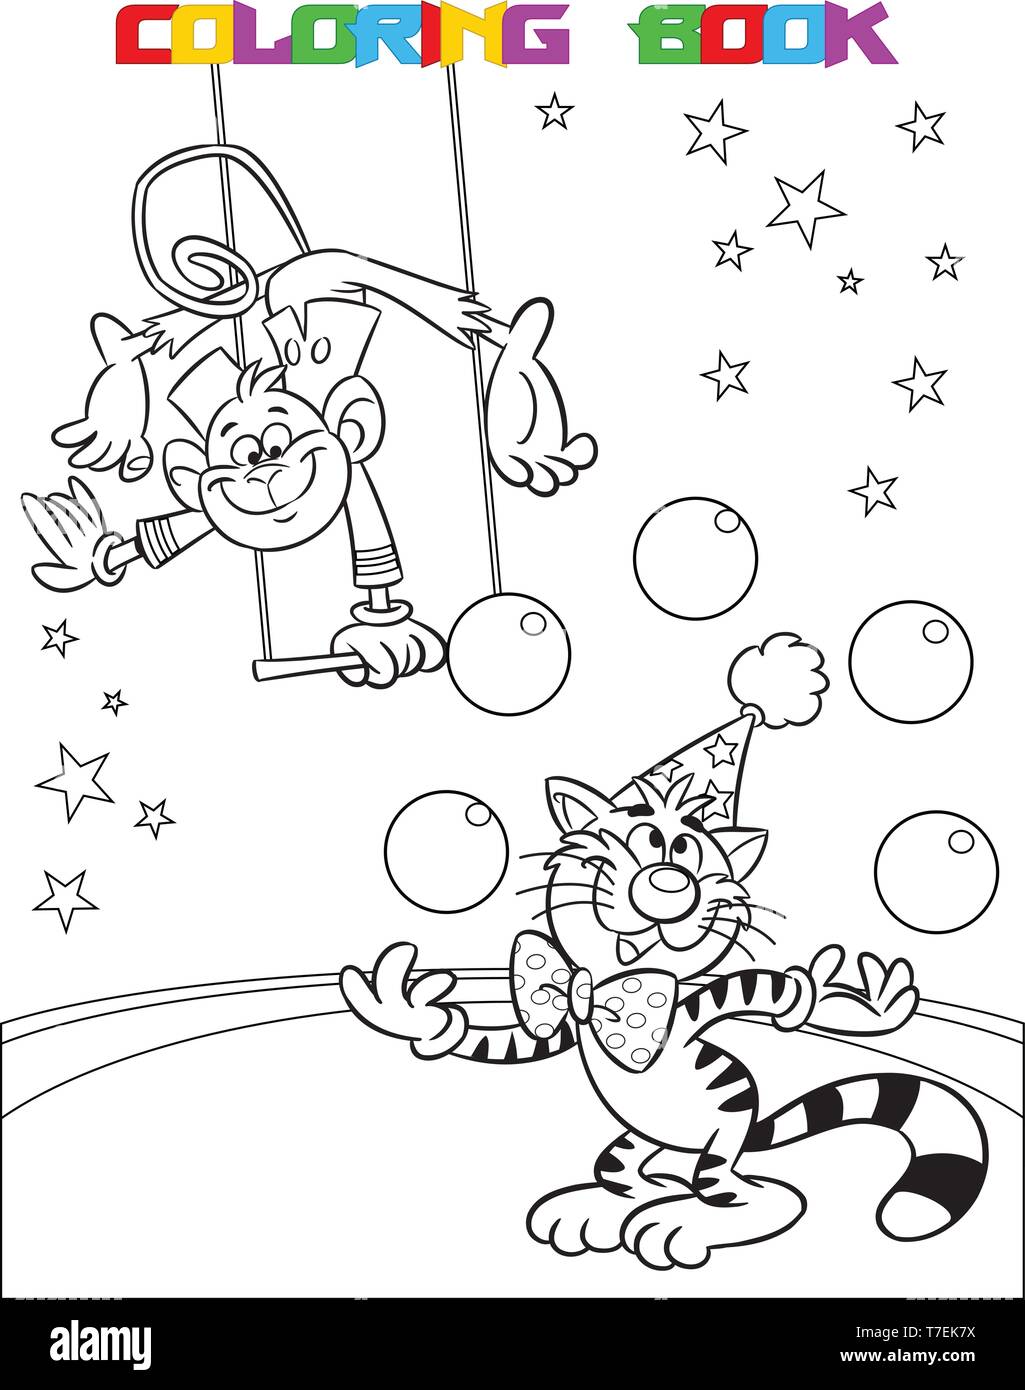 L'illustration montre un singe dans un cirque, qui effectue des acrobaties sur les balançoires. Dans l'arène de la cat présente le nombre de balles. Est fait une black Illustration de Vecteur